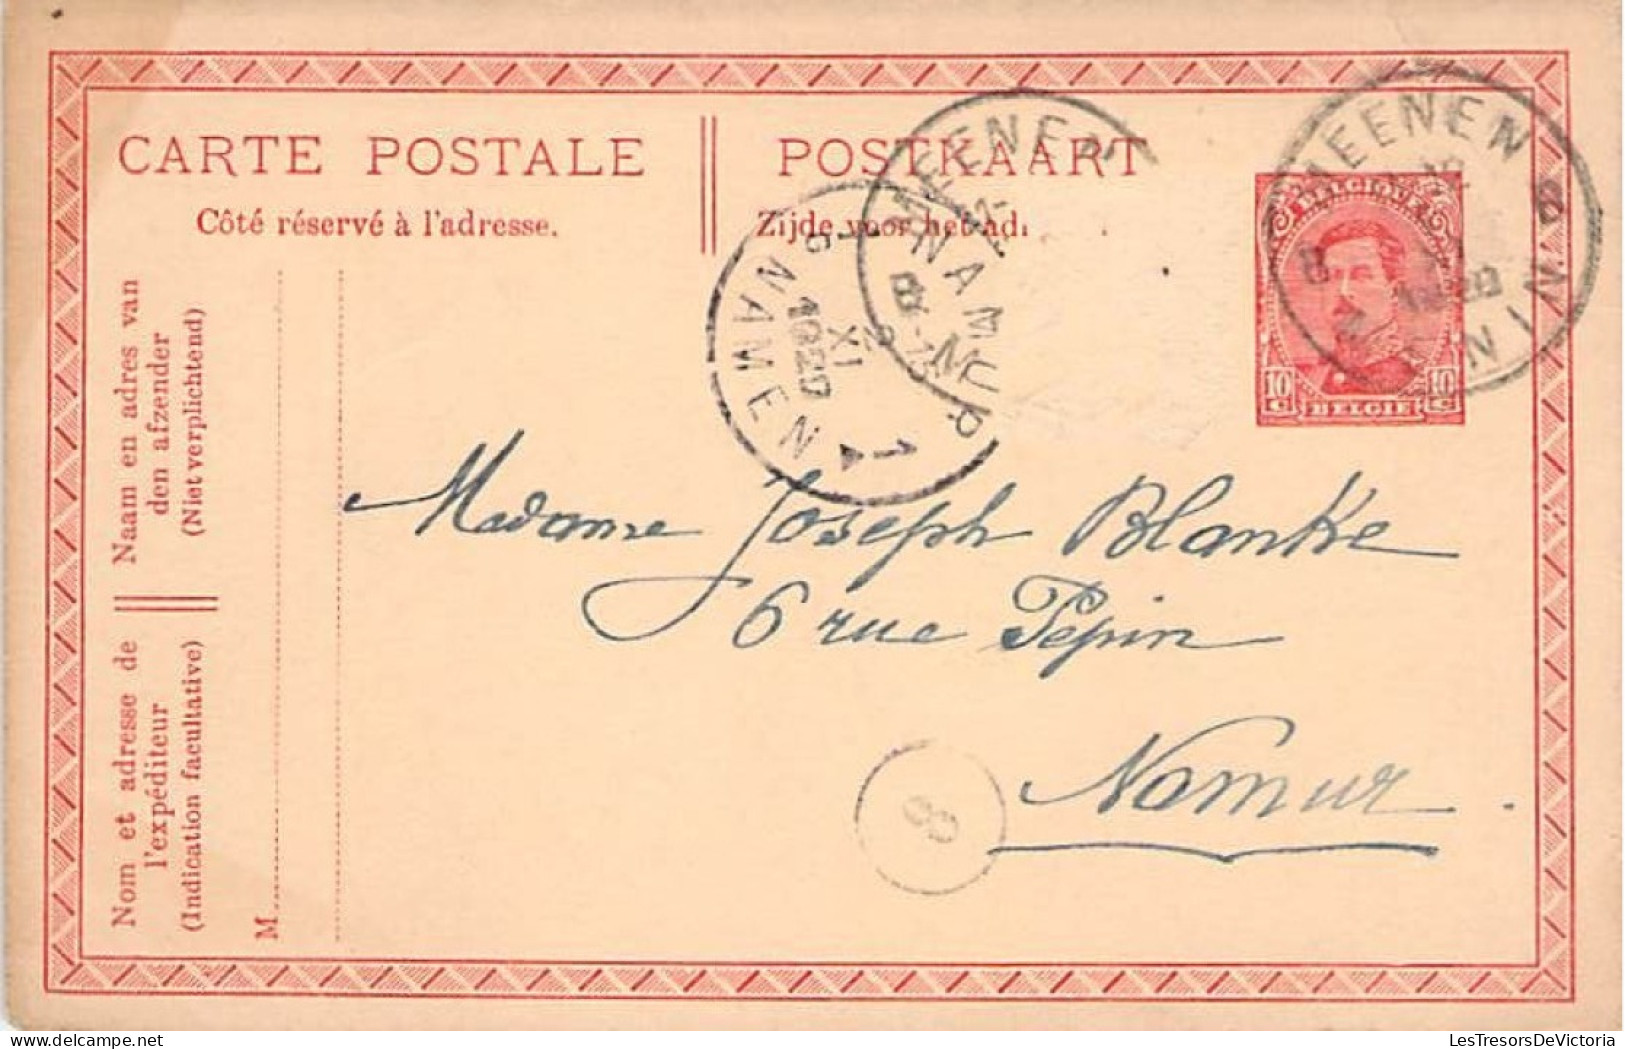 lot de 8 cartes postales anciennes - Entier postal - de 1916 à 1918 - Oblitération Namur